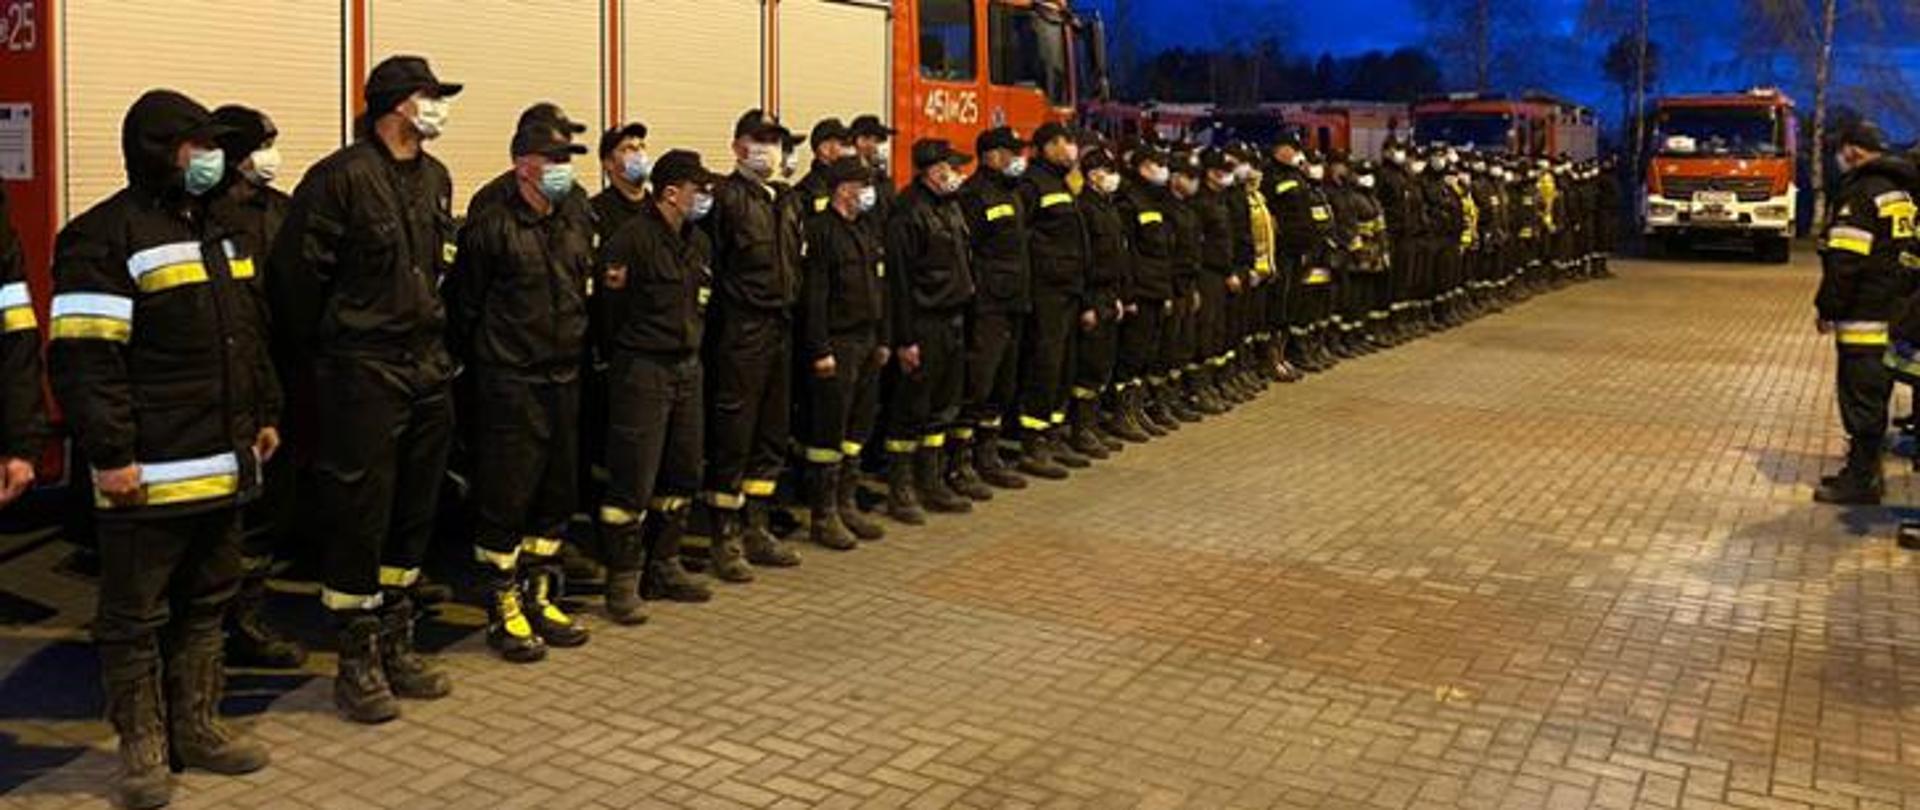 Strażacy w liczbie kilkudziesięciu stoją w dwuszeregu od lewej do prawej. Przed nimi stoi dowódca.